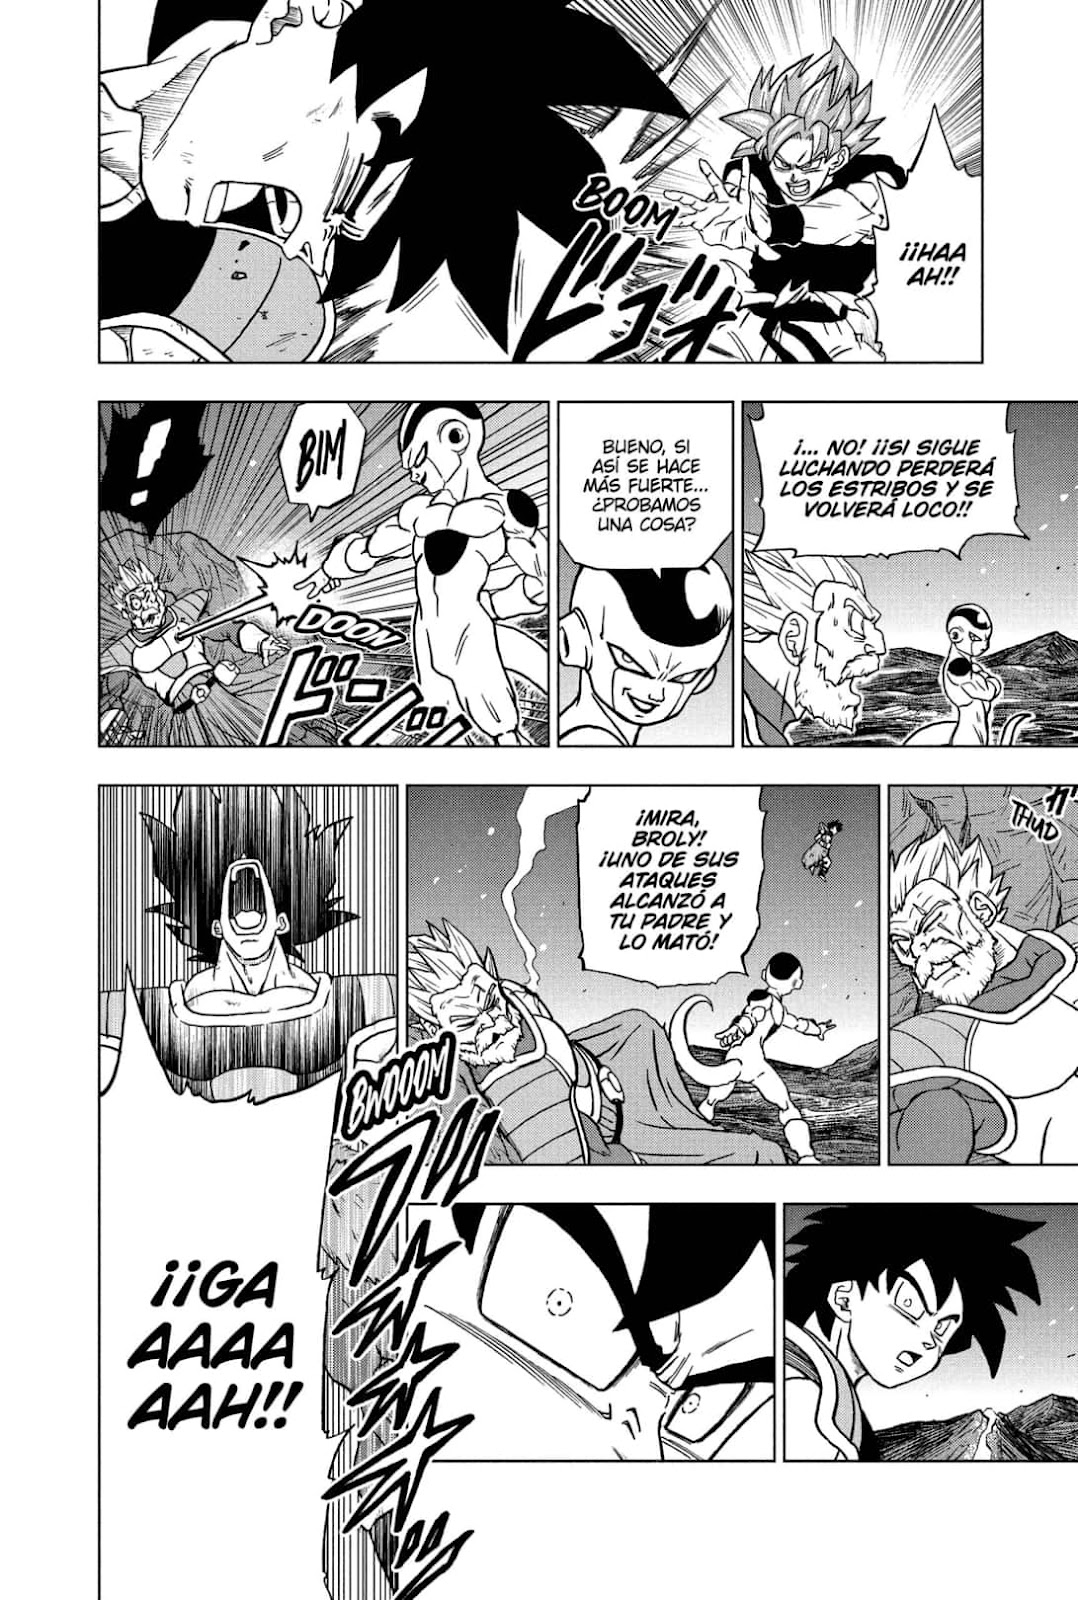 Dragon Ball Super: el capítulo 93 del manga llegará antes de lo esperado, Fecha de publicación, Goku, Vegeta, México MX, DEPOR-PLAY